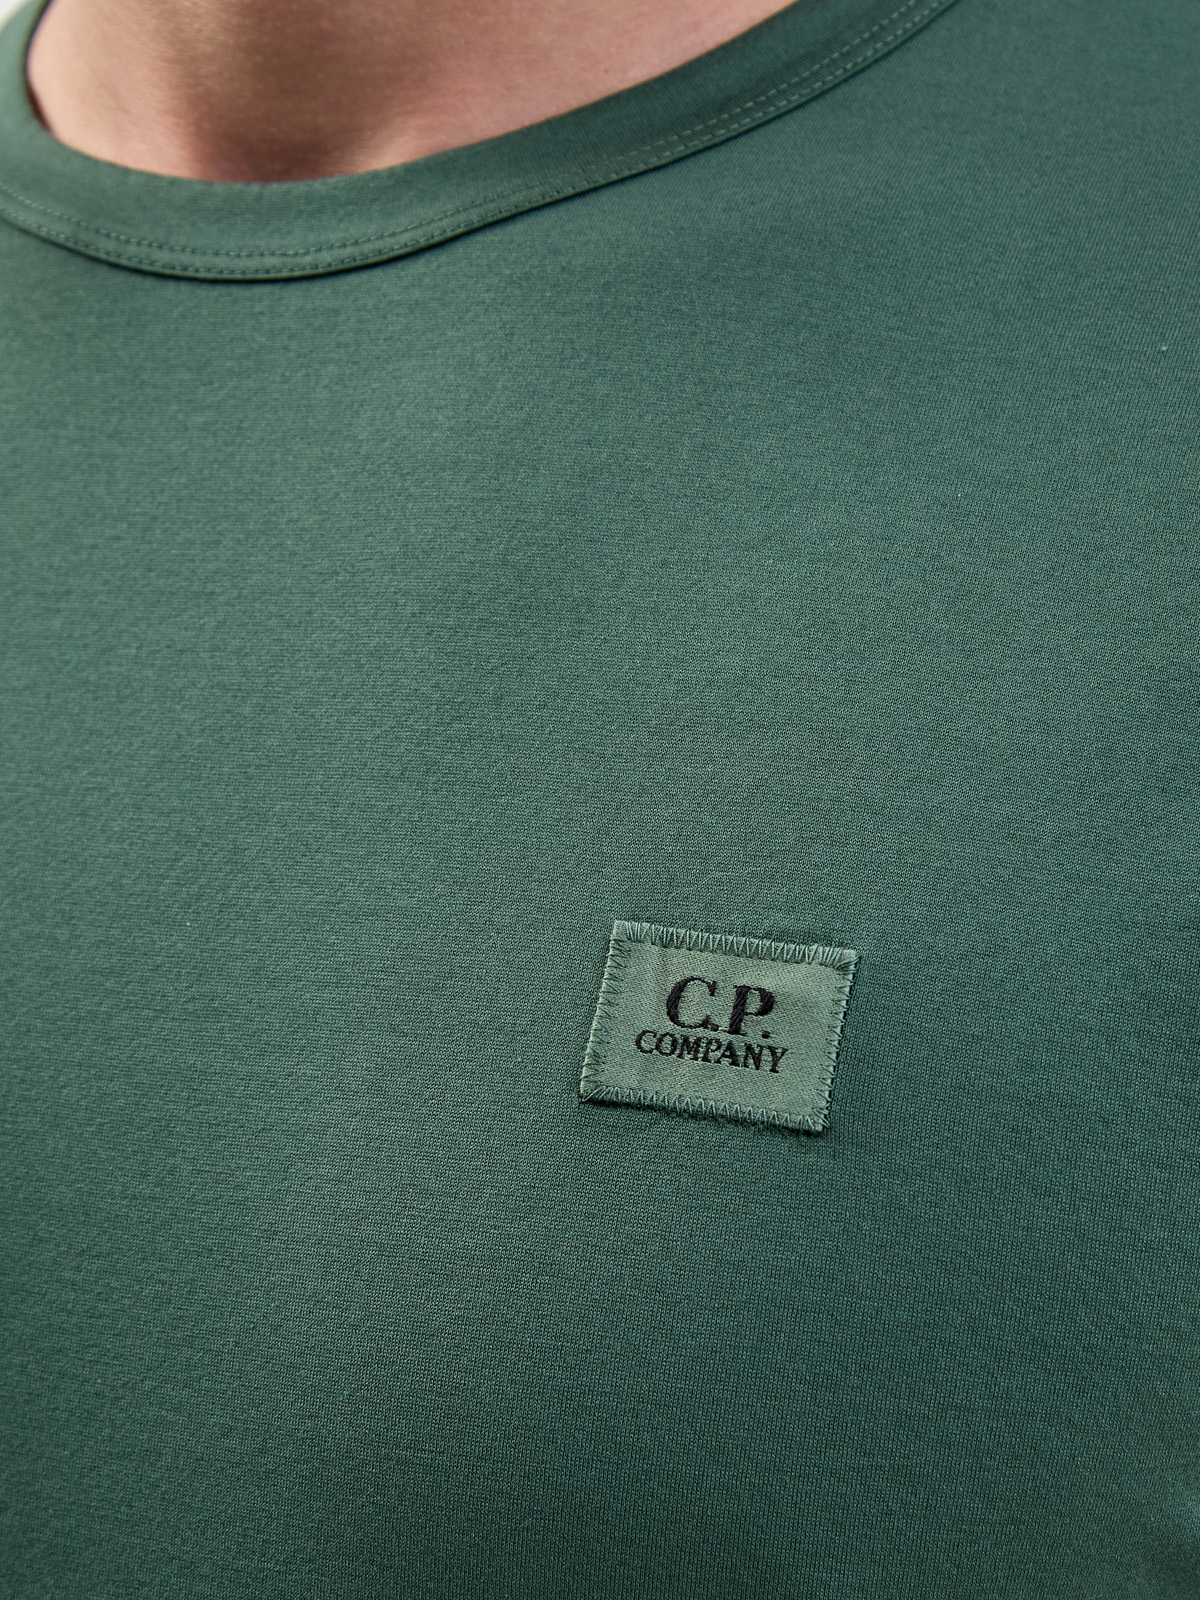 Однотонная футболка из гладкого хлопка джерси с нашивкой C.P.COMPANY, цвет зеленый, размер 48;52;54 - фото 5